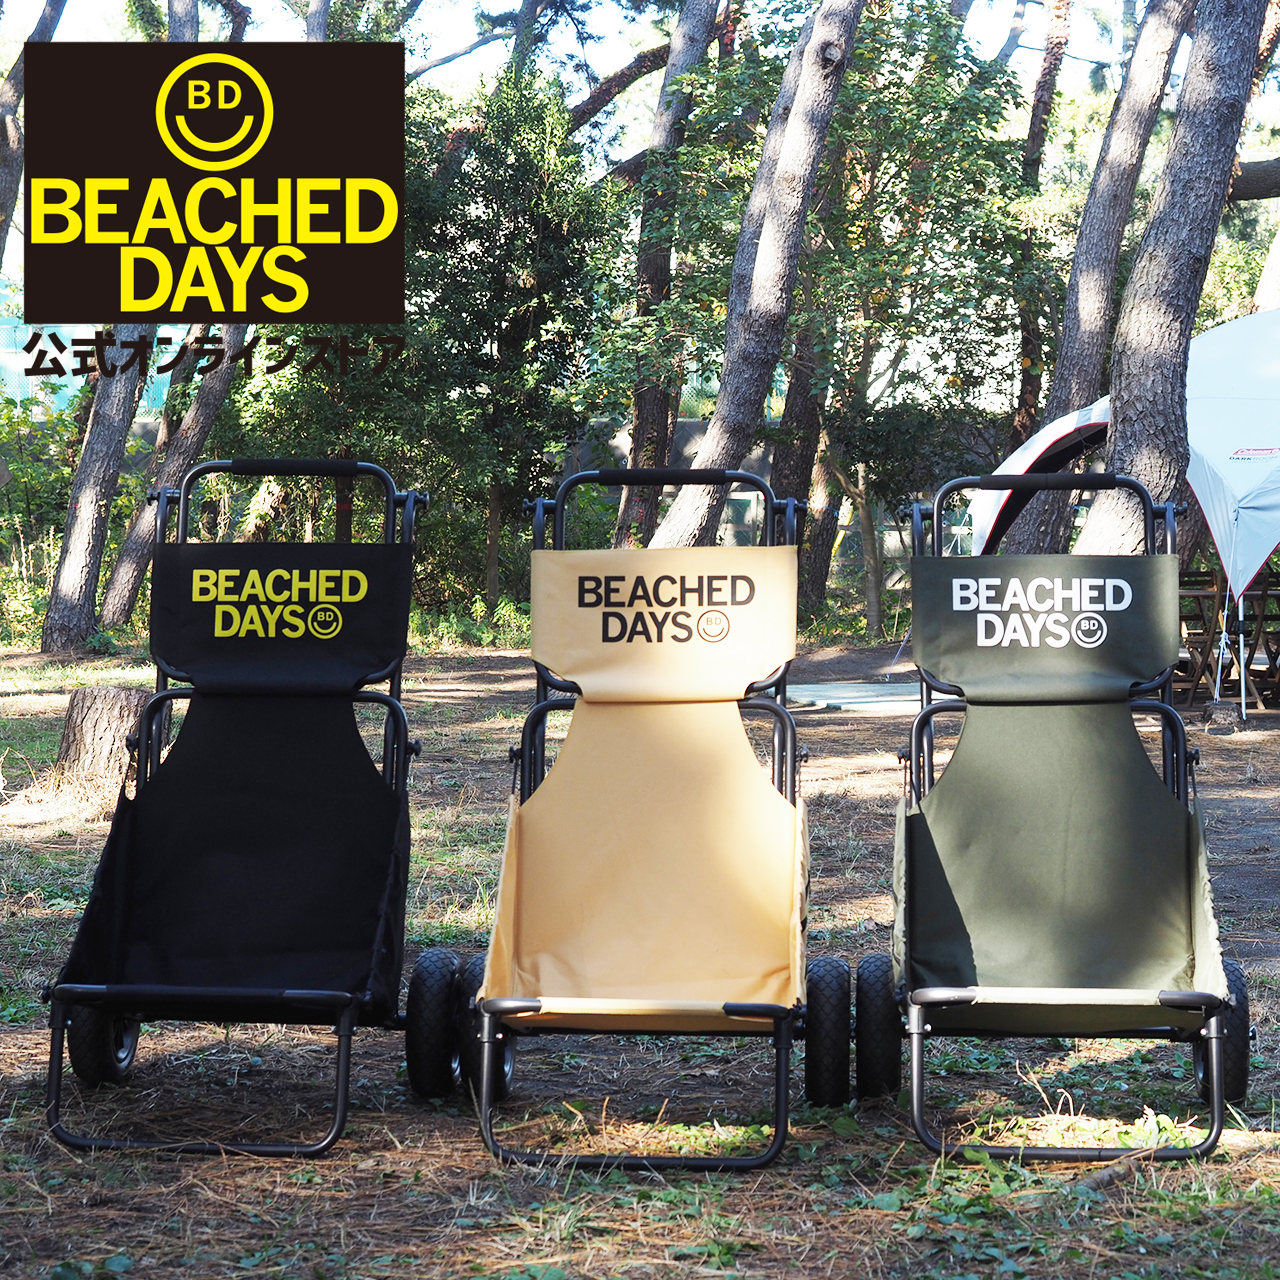 バギーチェア ビーチドデイズ 公式 BEACHED DAYS Buggy Chair キャンプ キャリー カート ワゴン カーゴ キャリア バギー 押す コンパクト 折りたたみ 軽量 持ち運び キャンプチェア いす 椅子 アウトドア サーフィン 釣り画像